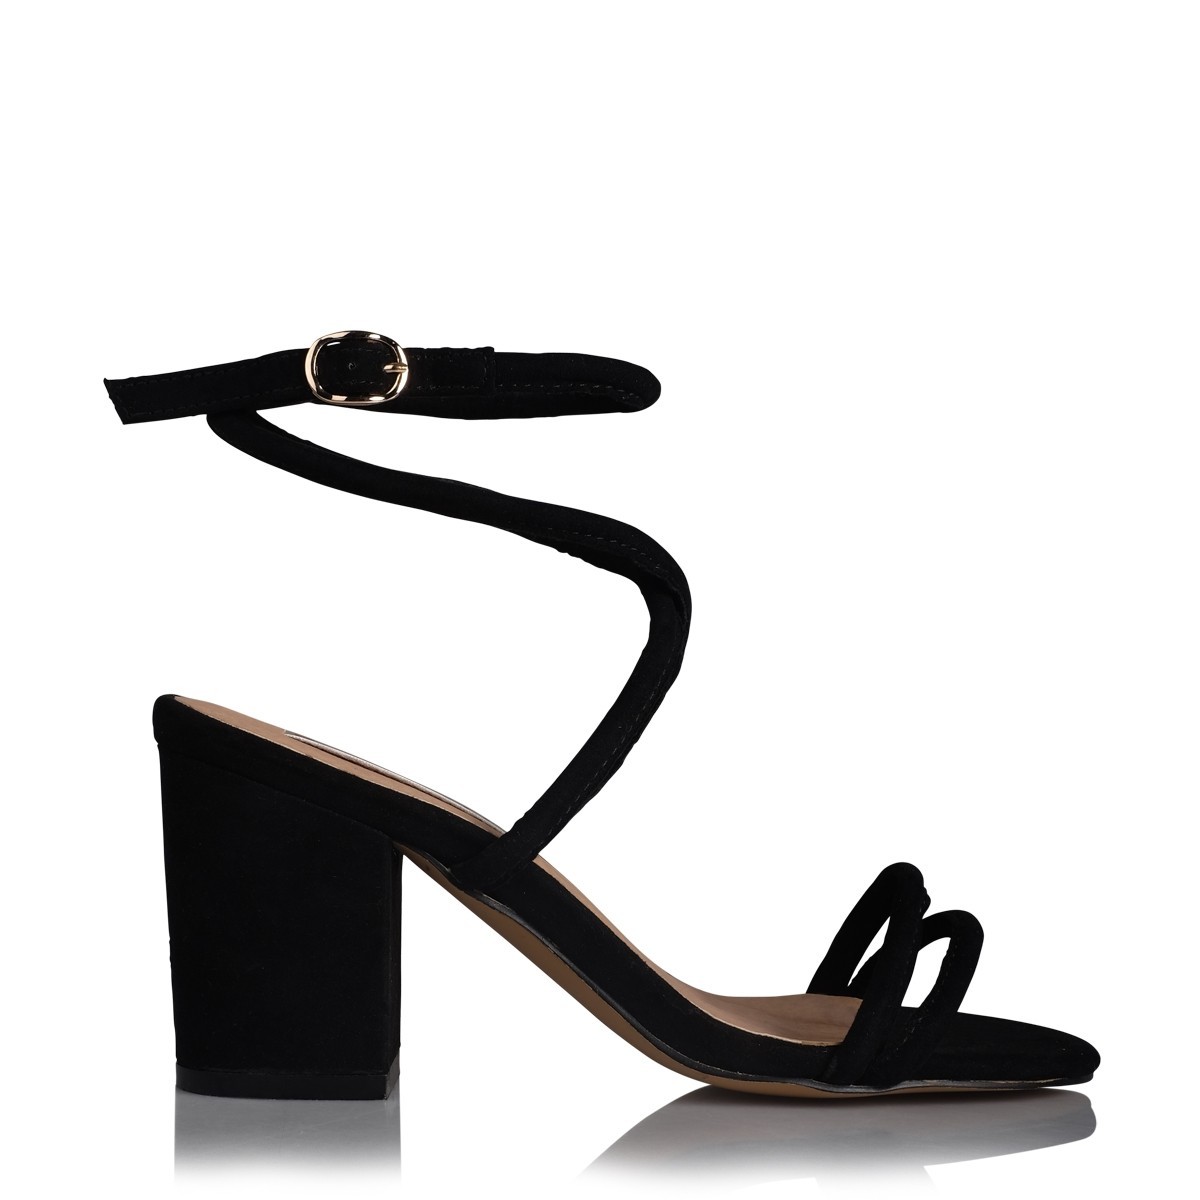 Calvi Black Suede by Billini Shoes on Sale | ShoeSales